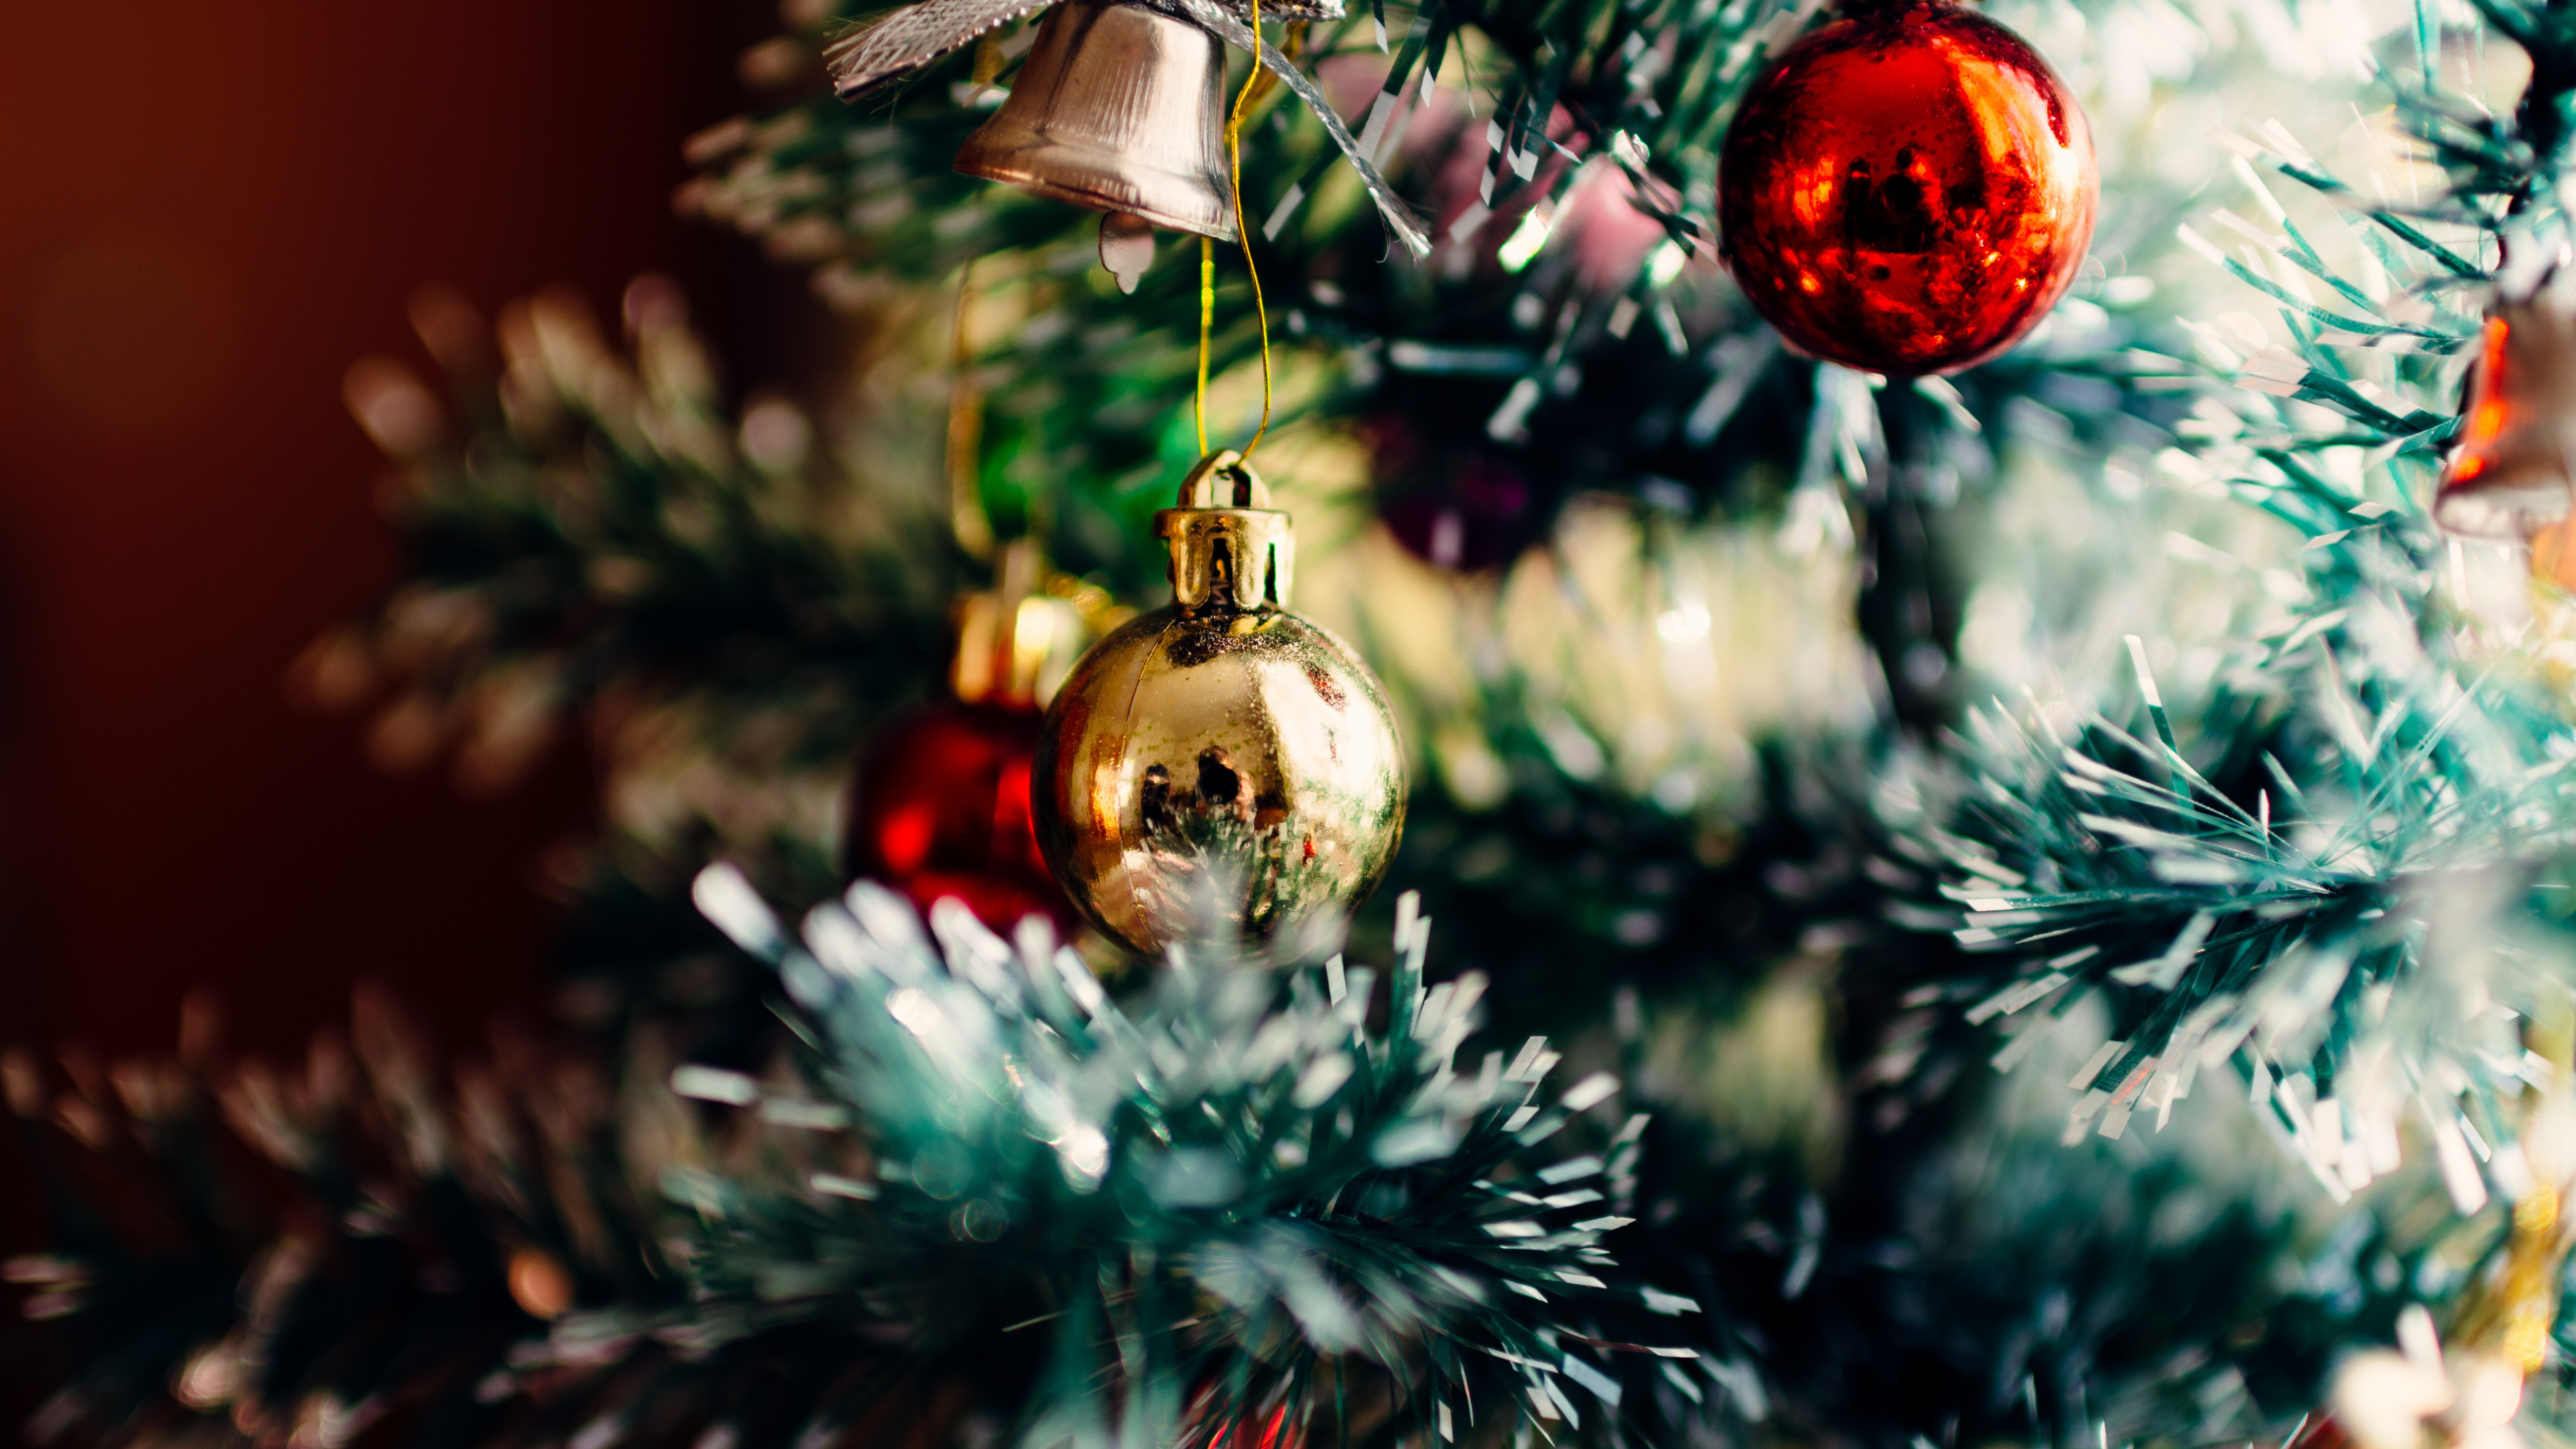 圣诞节和节日, 圣诞节那天, 假日, 圣诞树, 圣诞节的装饰品 壁纸 3840x2160 允许